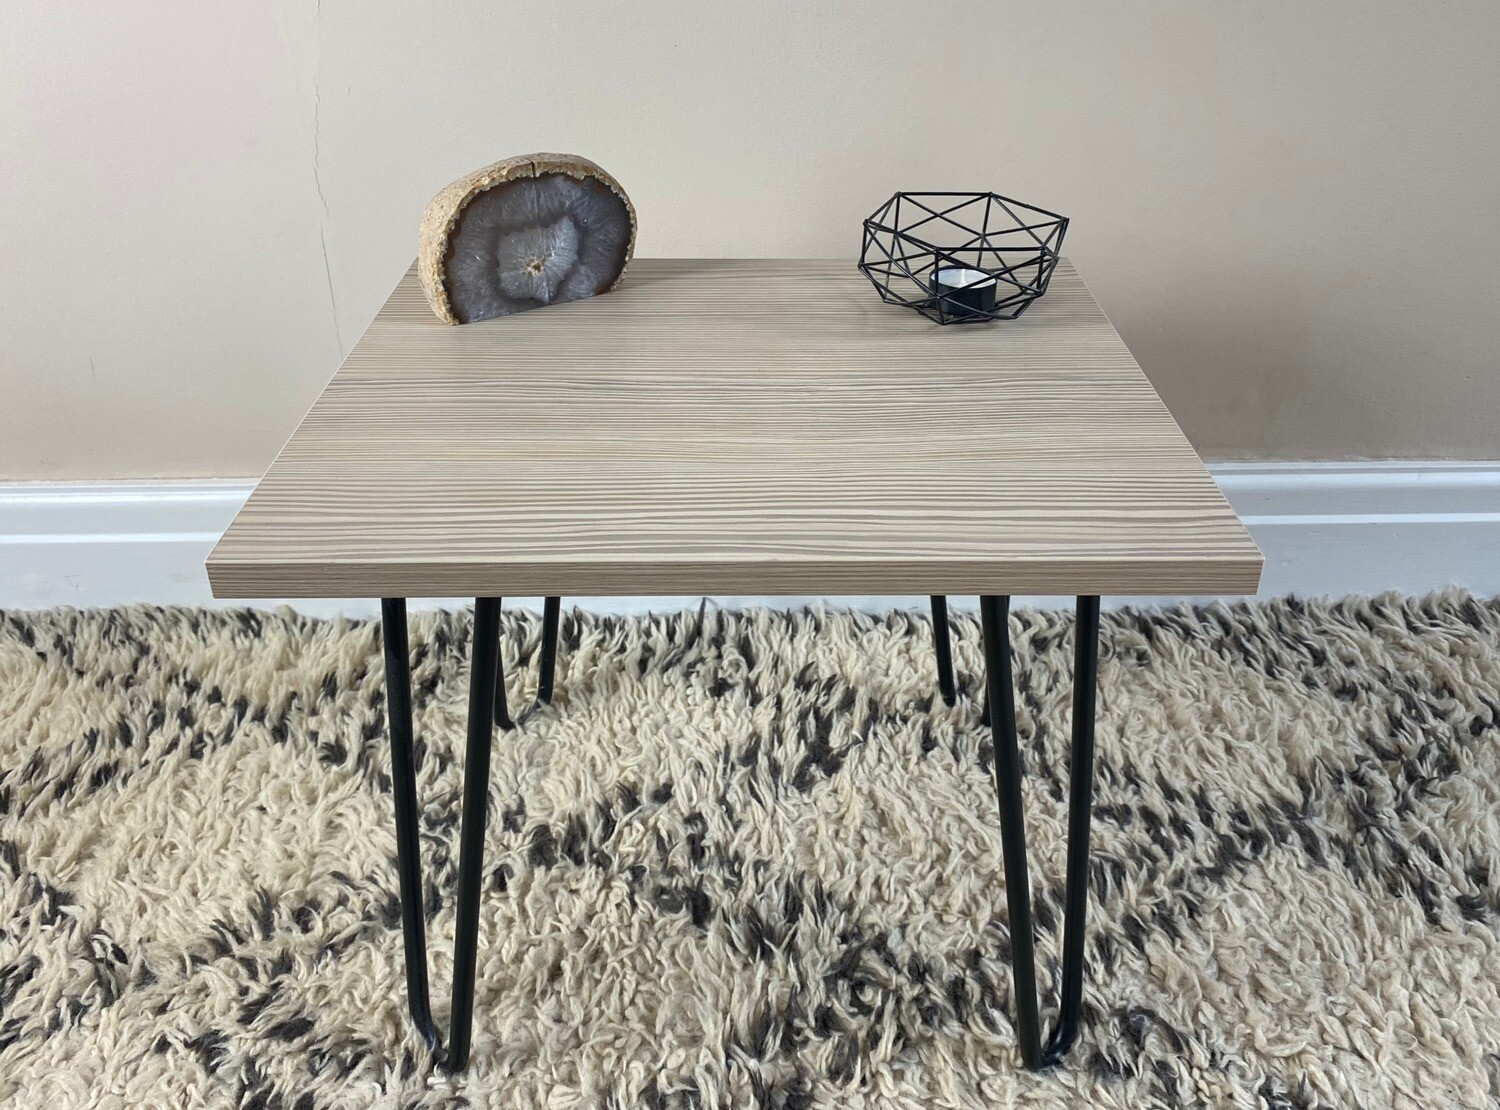 Coastal pine laminate wood 'Edie' side table with steel hairpin legs